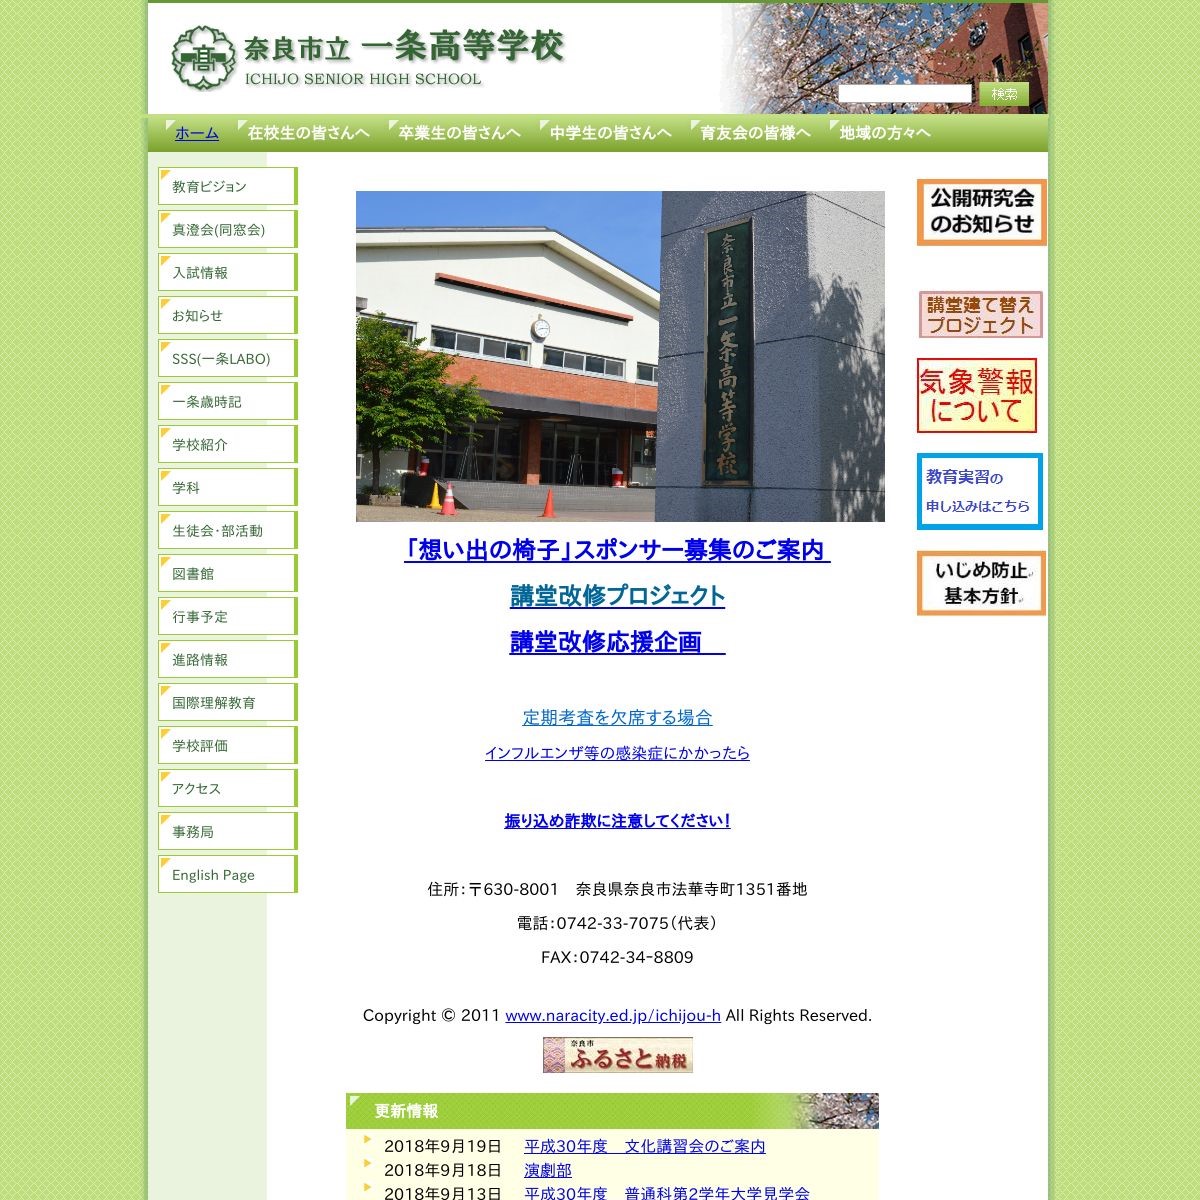 奈良市立一条高等学校